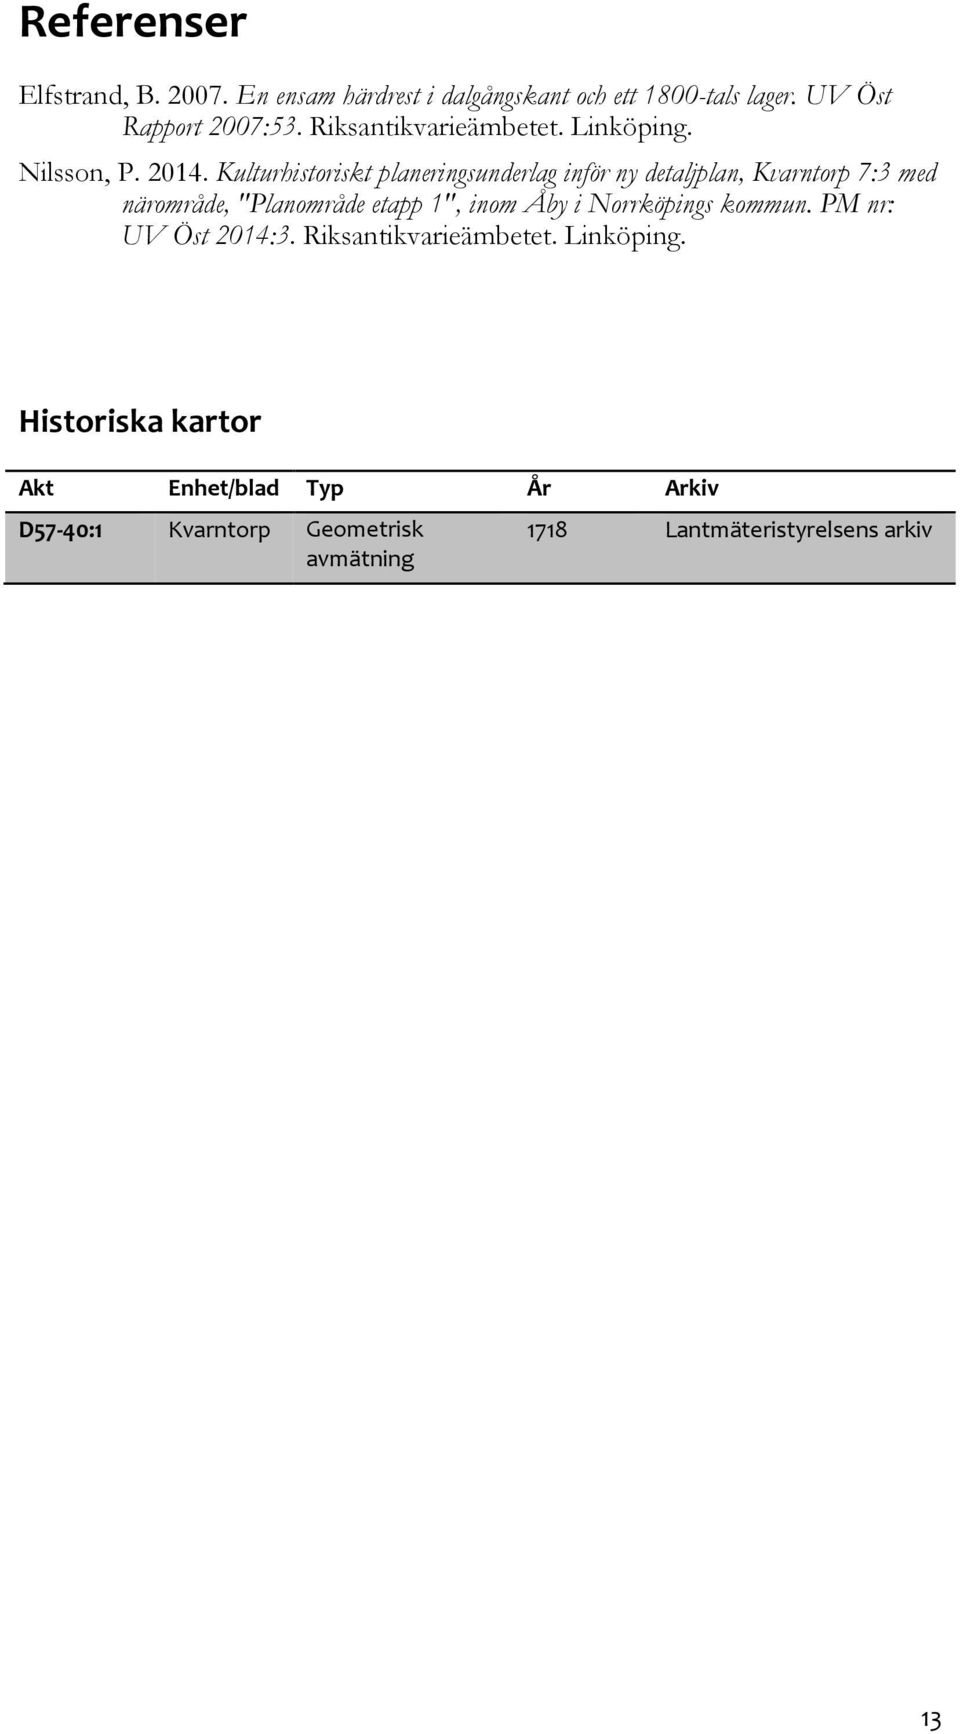 Kulturhistoriskt planeringsunderlag inför ny detaljplan, Kvarntorp 7:3 med närområde, "Planområde etapp 1", inom Åby i